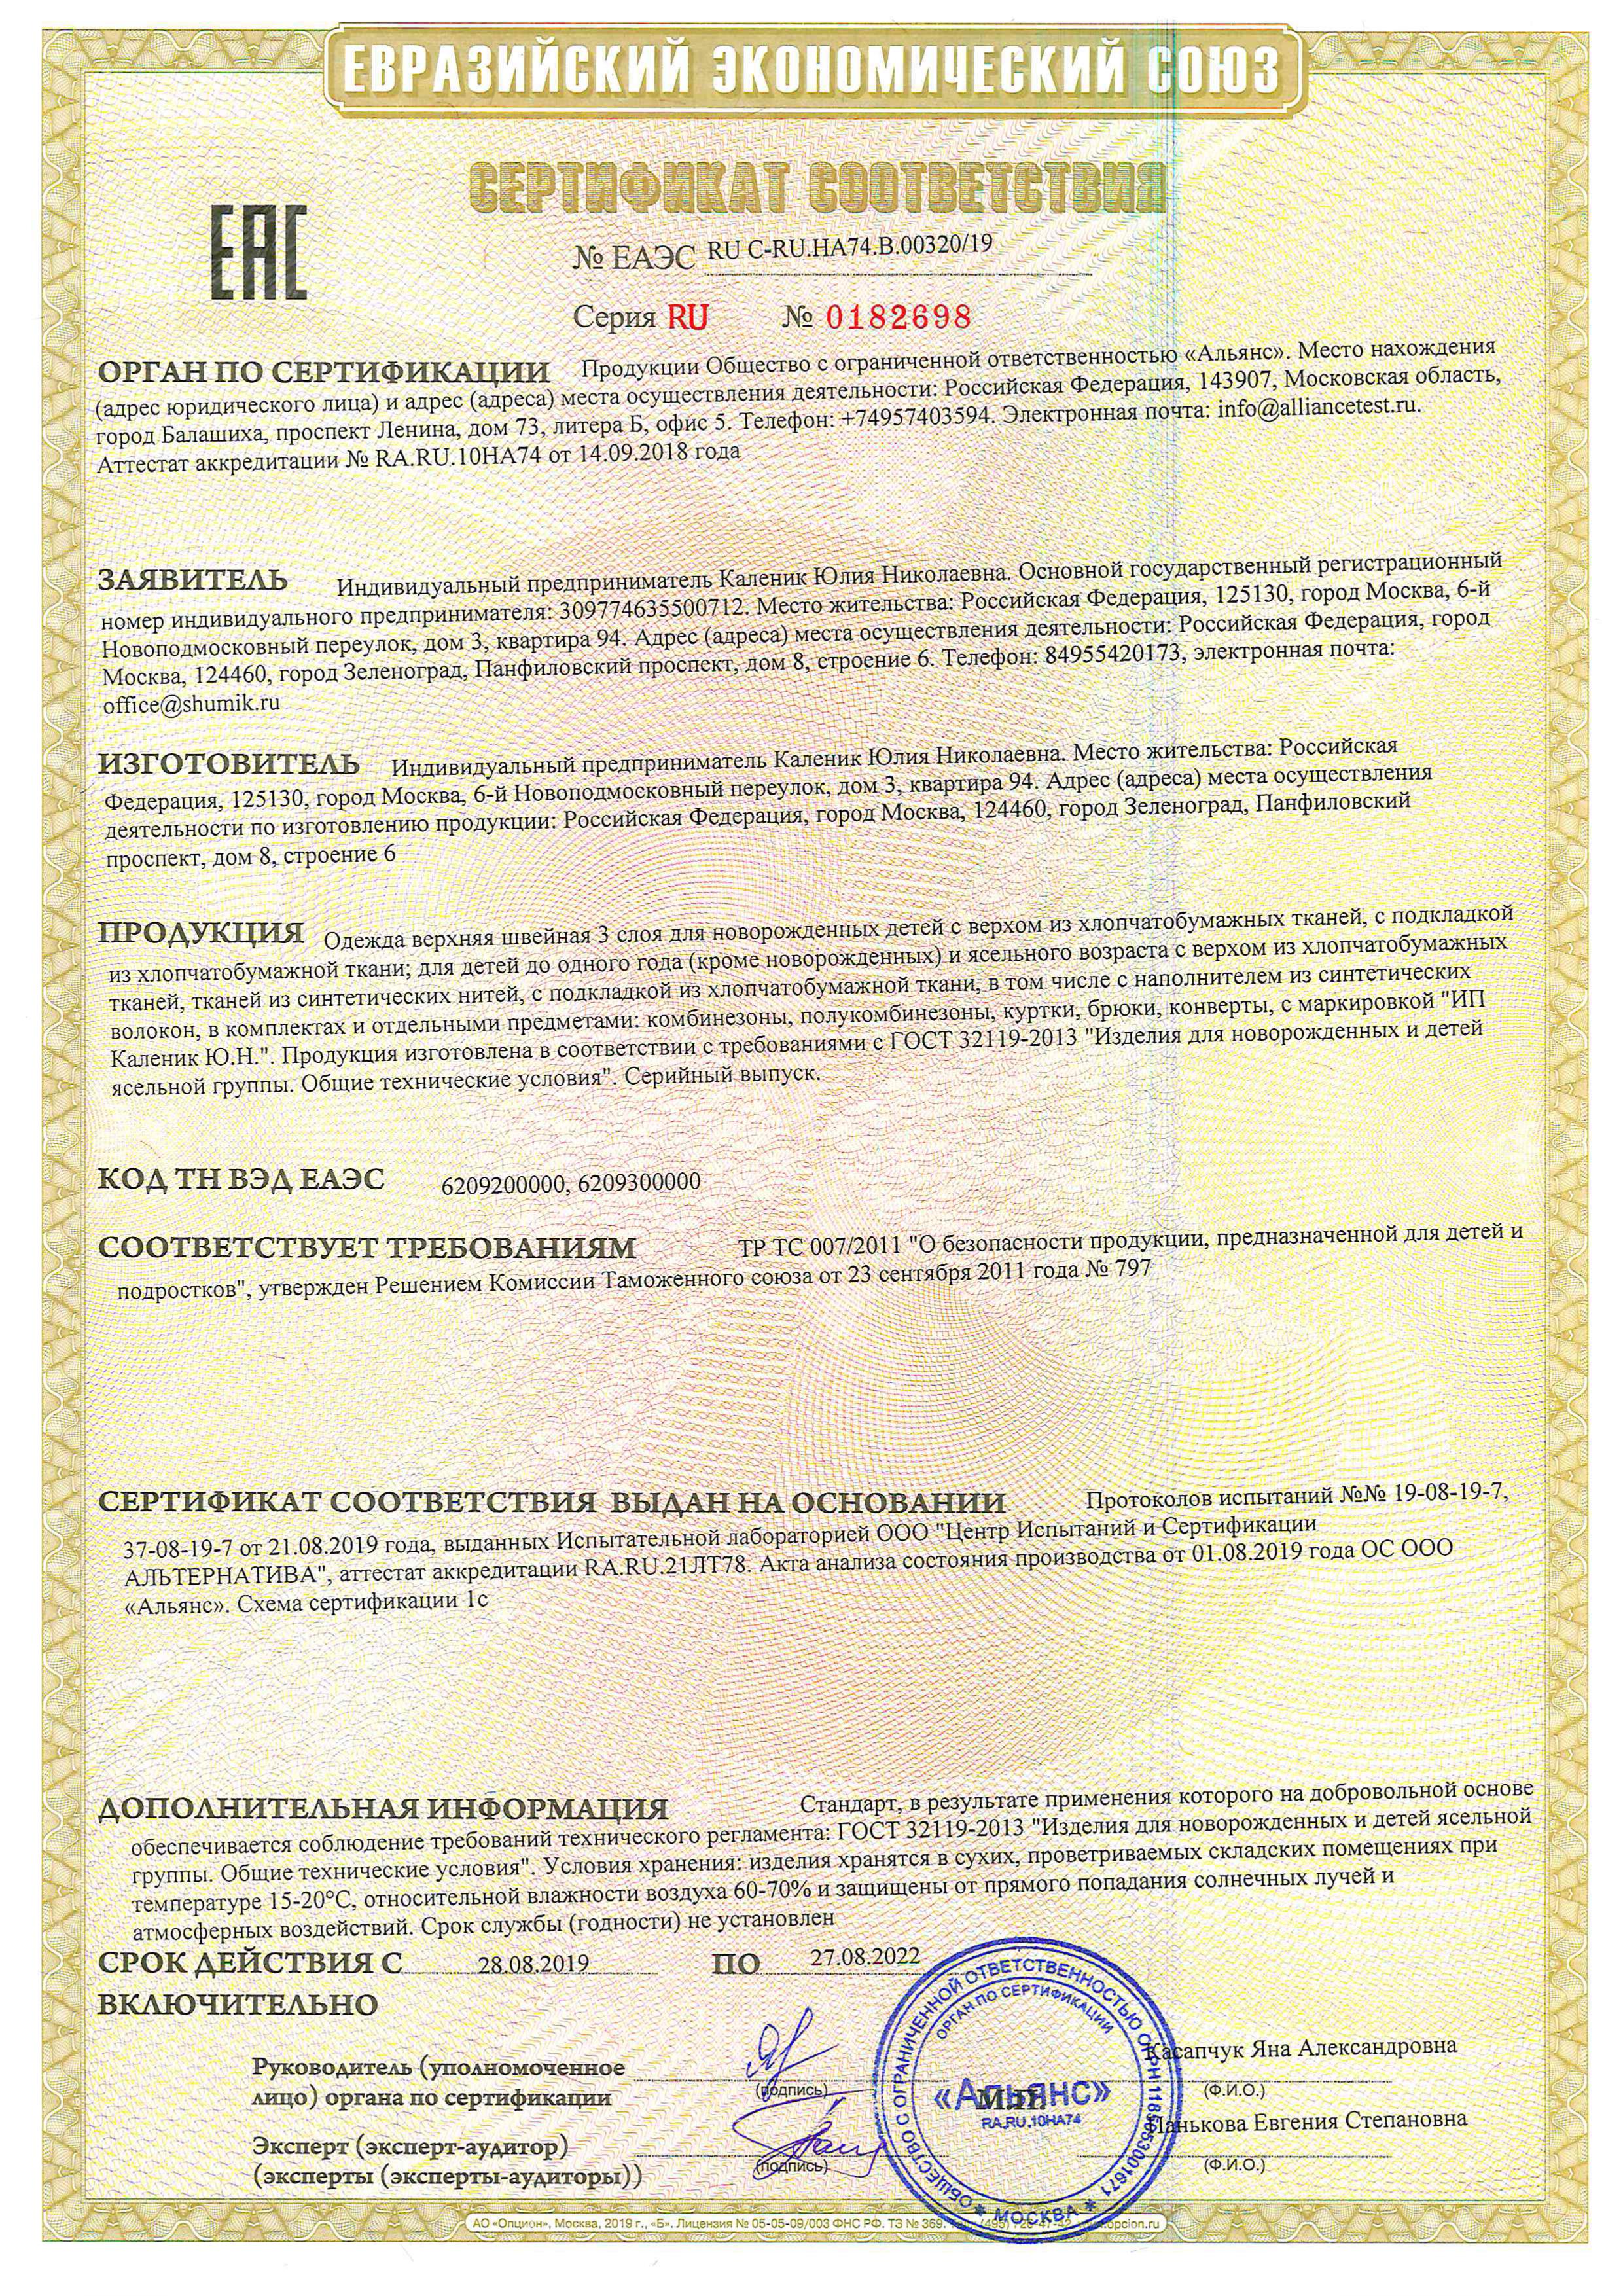 сертификат соответствия 3 слой сонный гномик